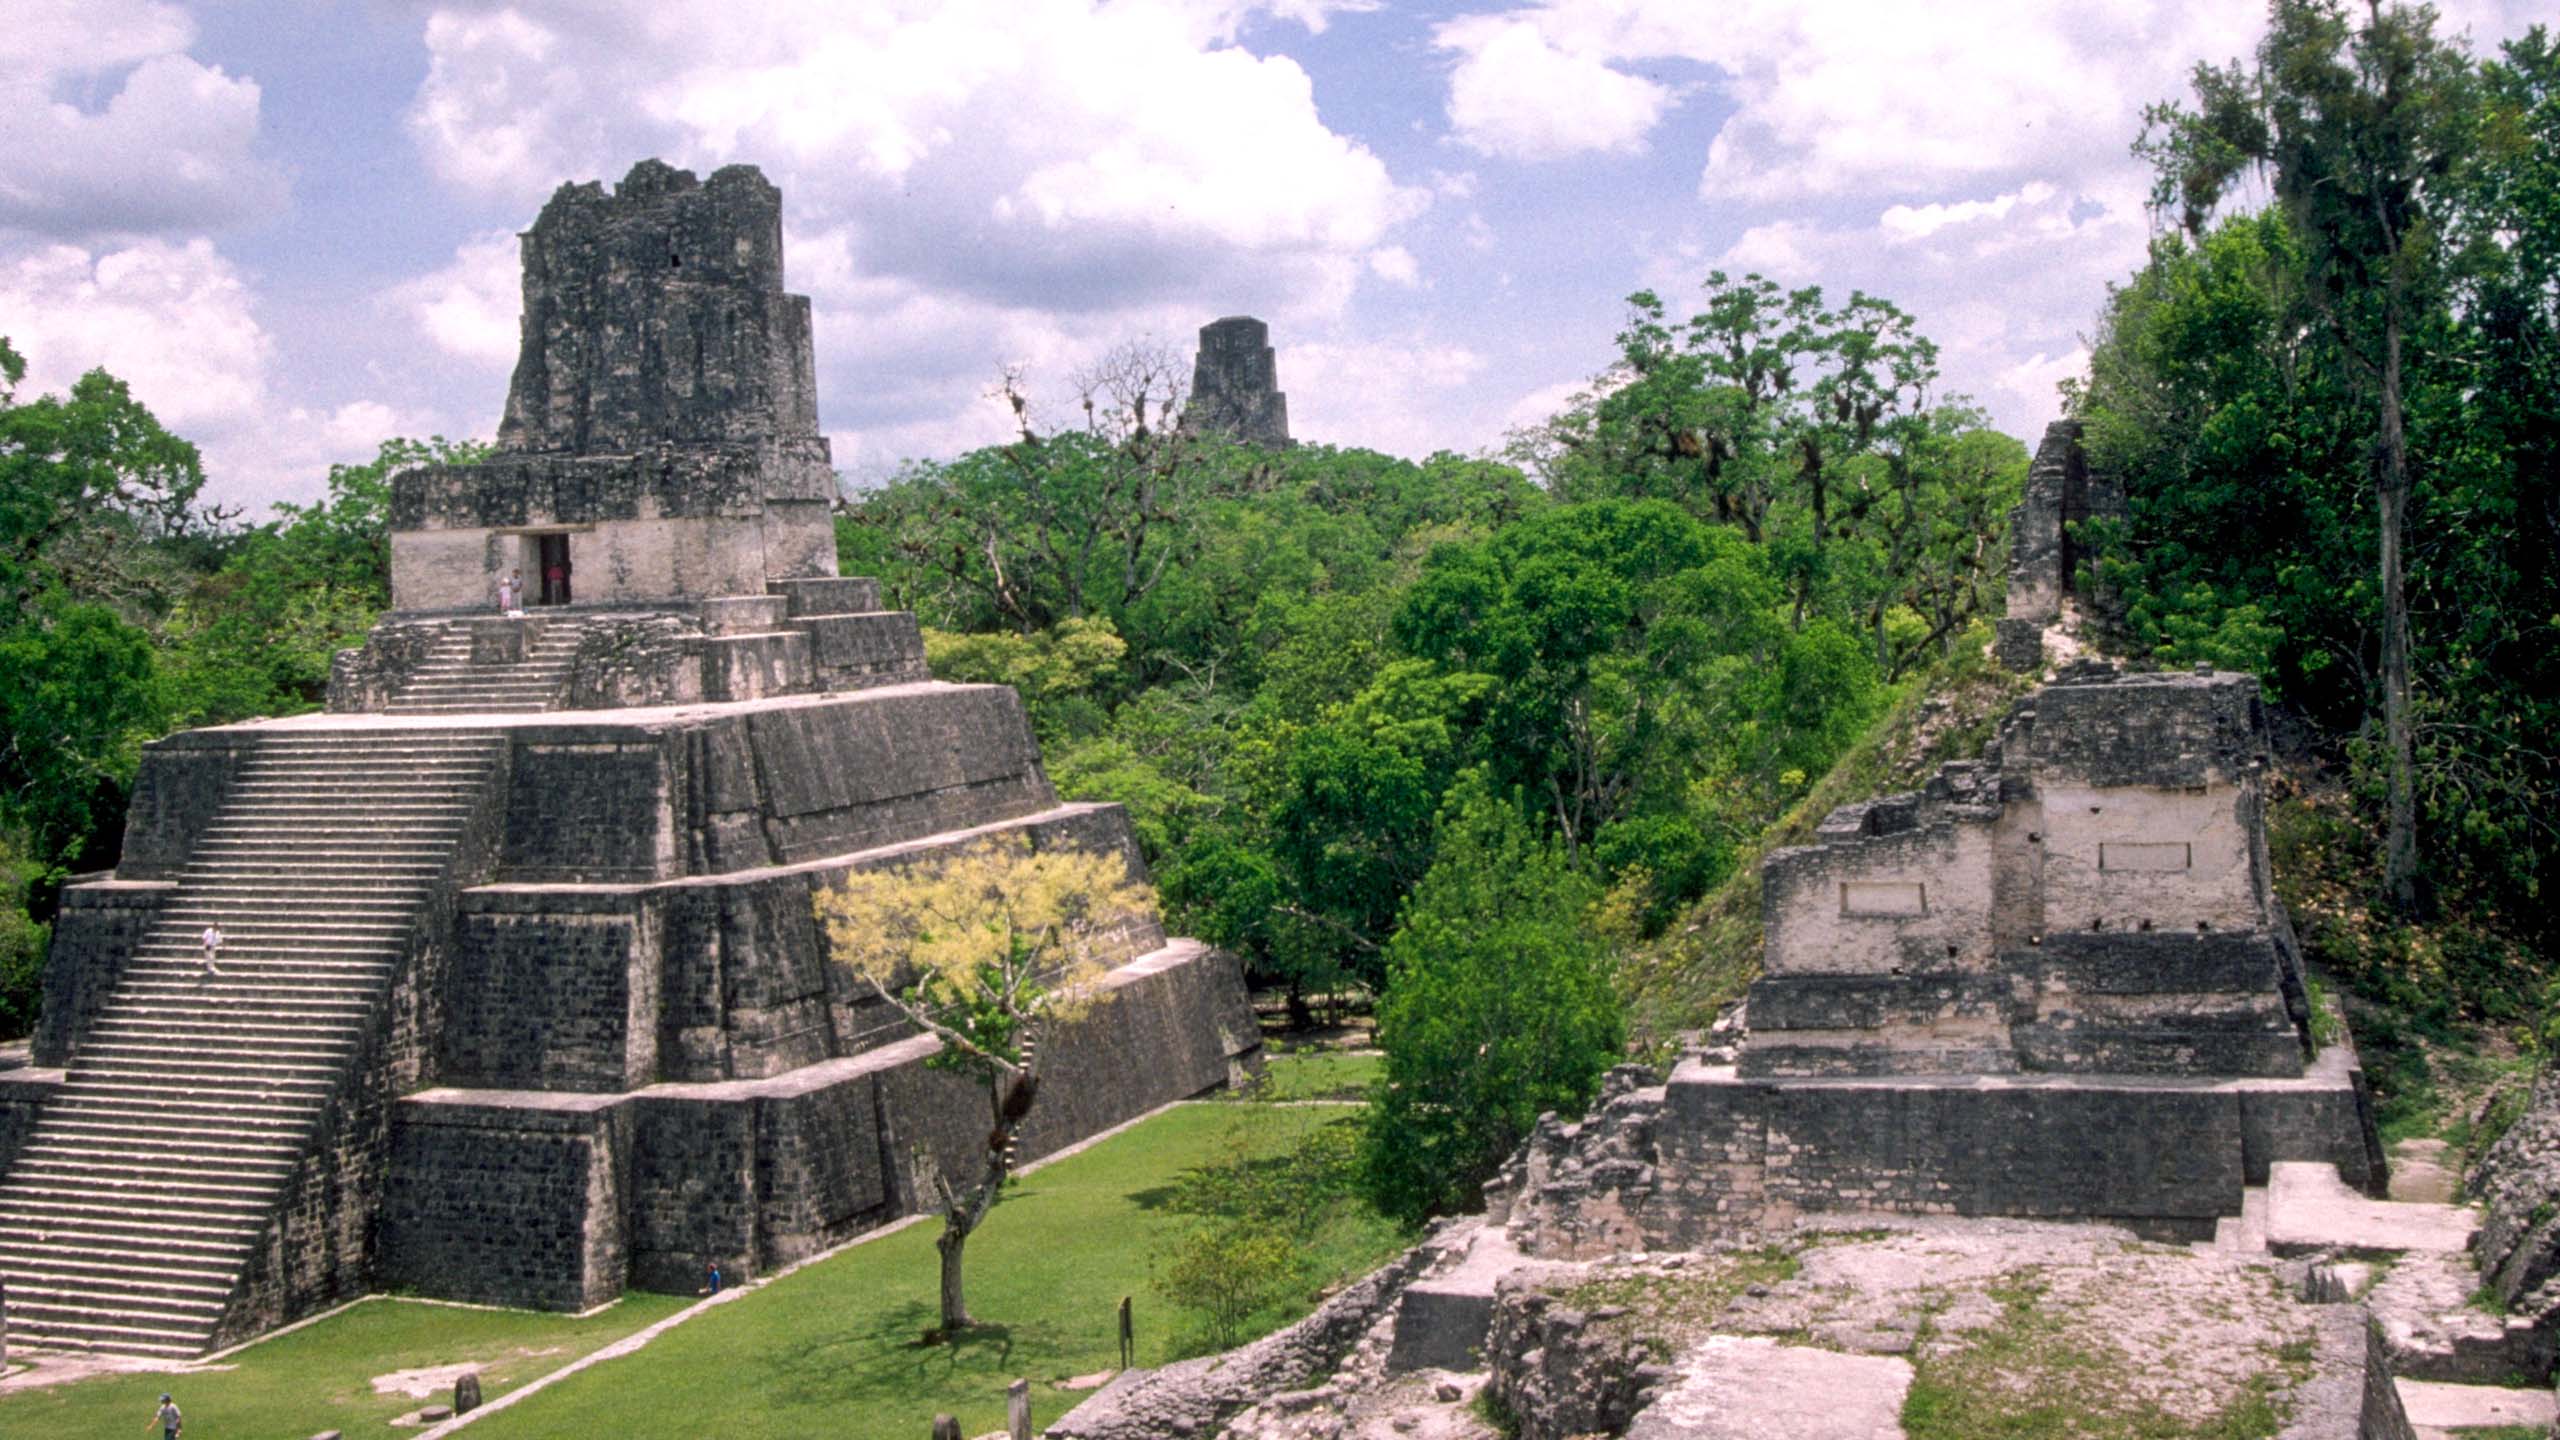 Mayan temple of Tikal